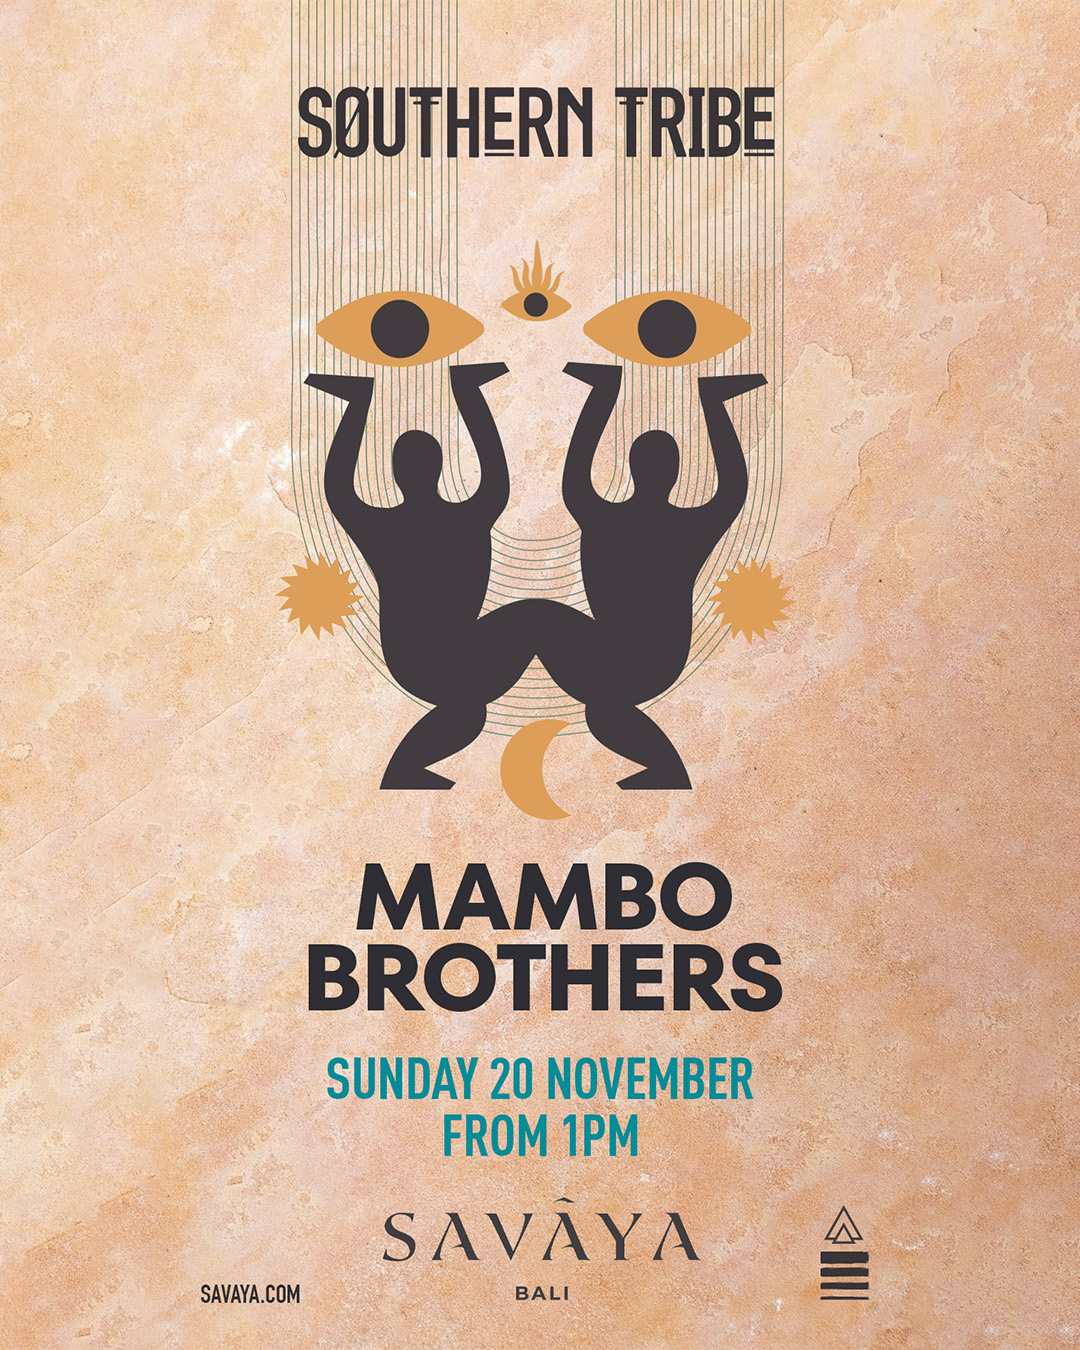 SOUTHERN TRIBE SUNDAYS PRESENT THE MAMBO BROTHERS AT SAVAYA – NOVEMBER 20TH thumbnail image